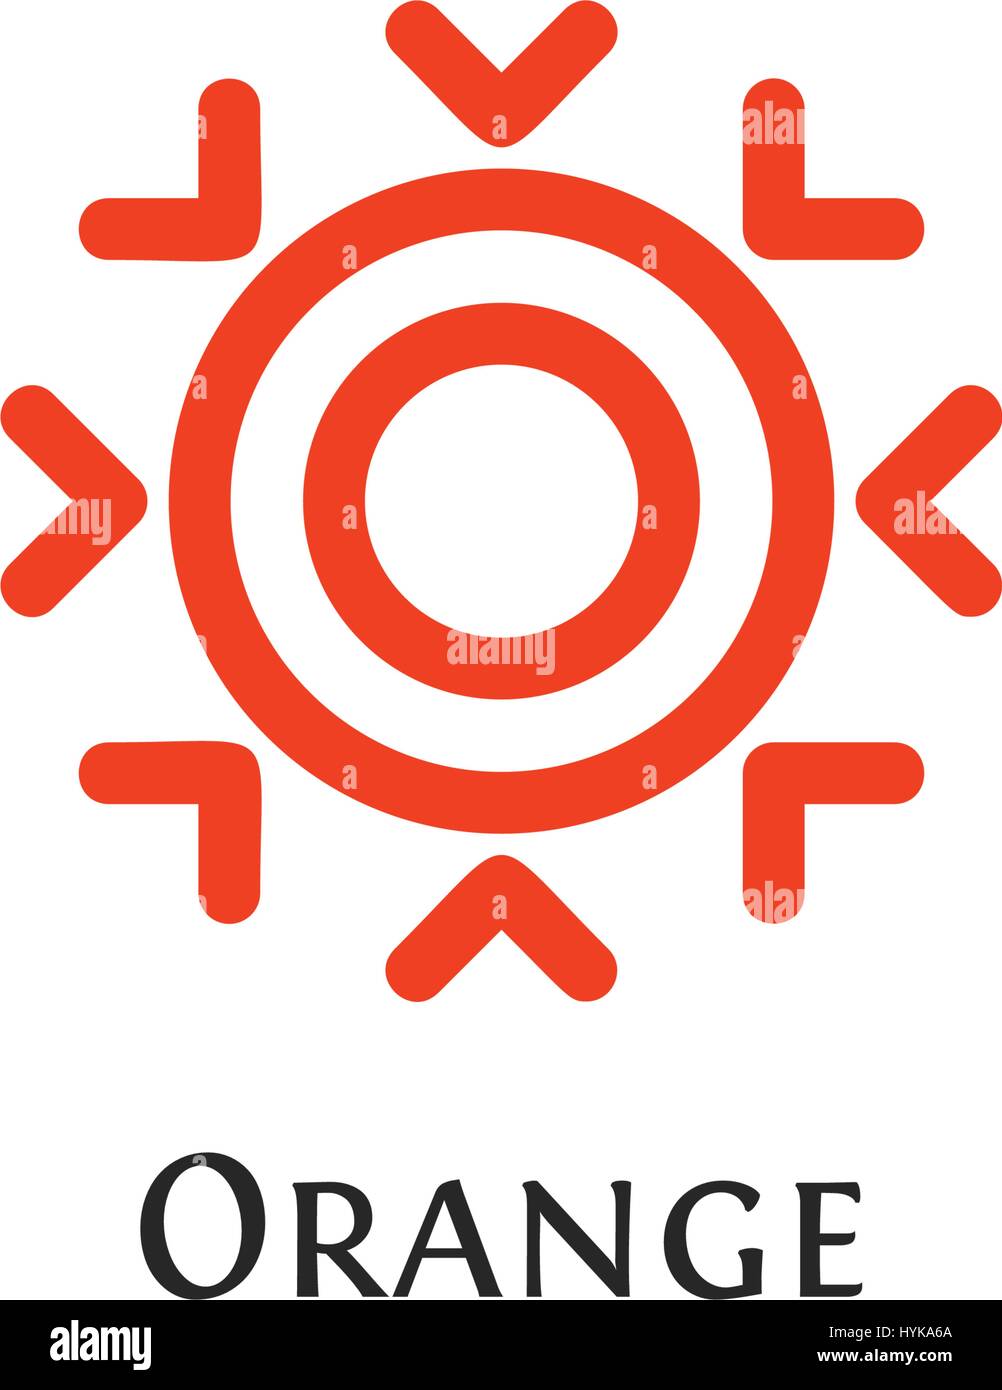 Resumen aislados de forma redonda de color naranja, Sun logo logotipo,snowflake ilustración vectorial Ilustración del Vector